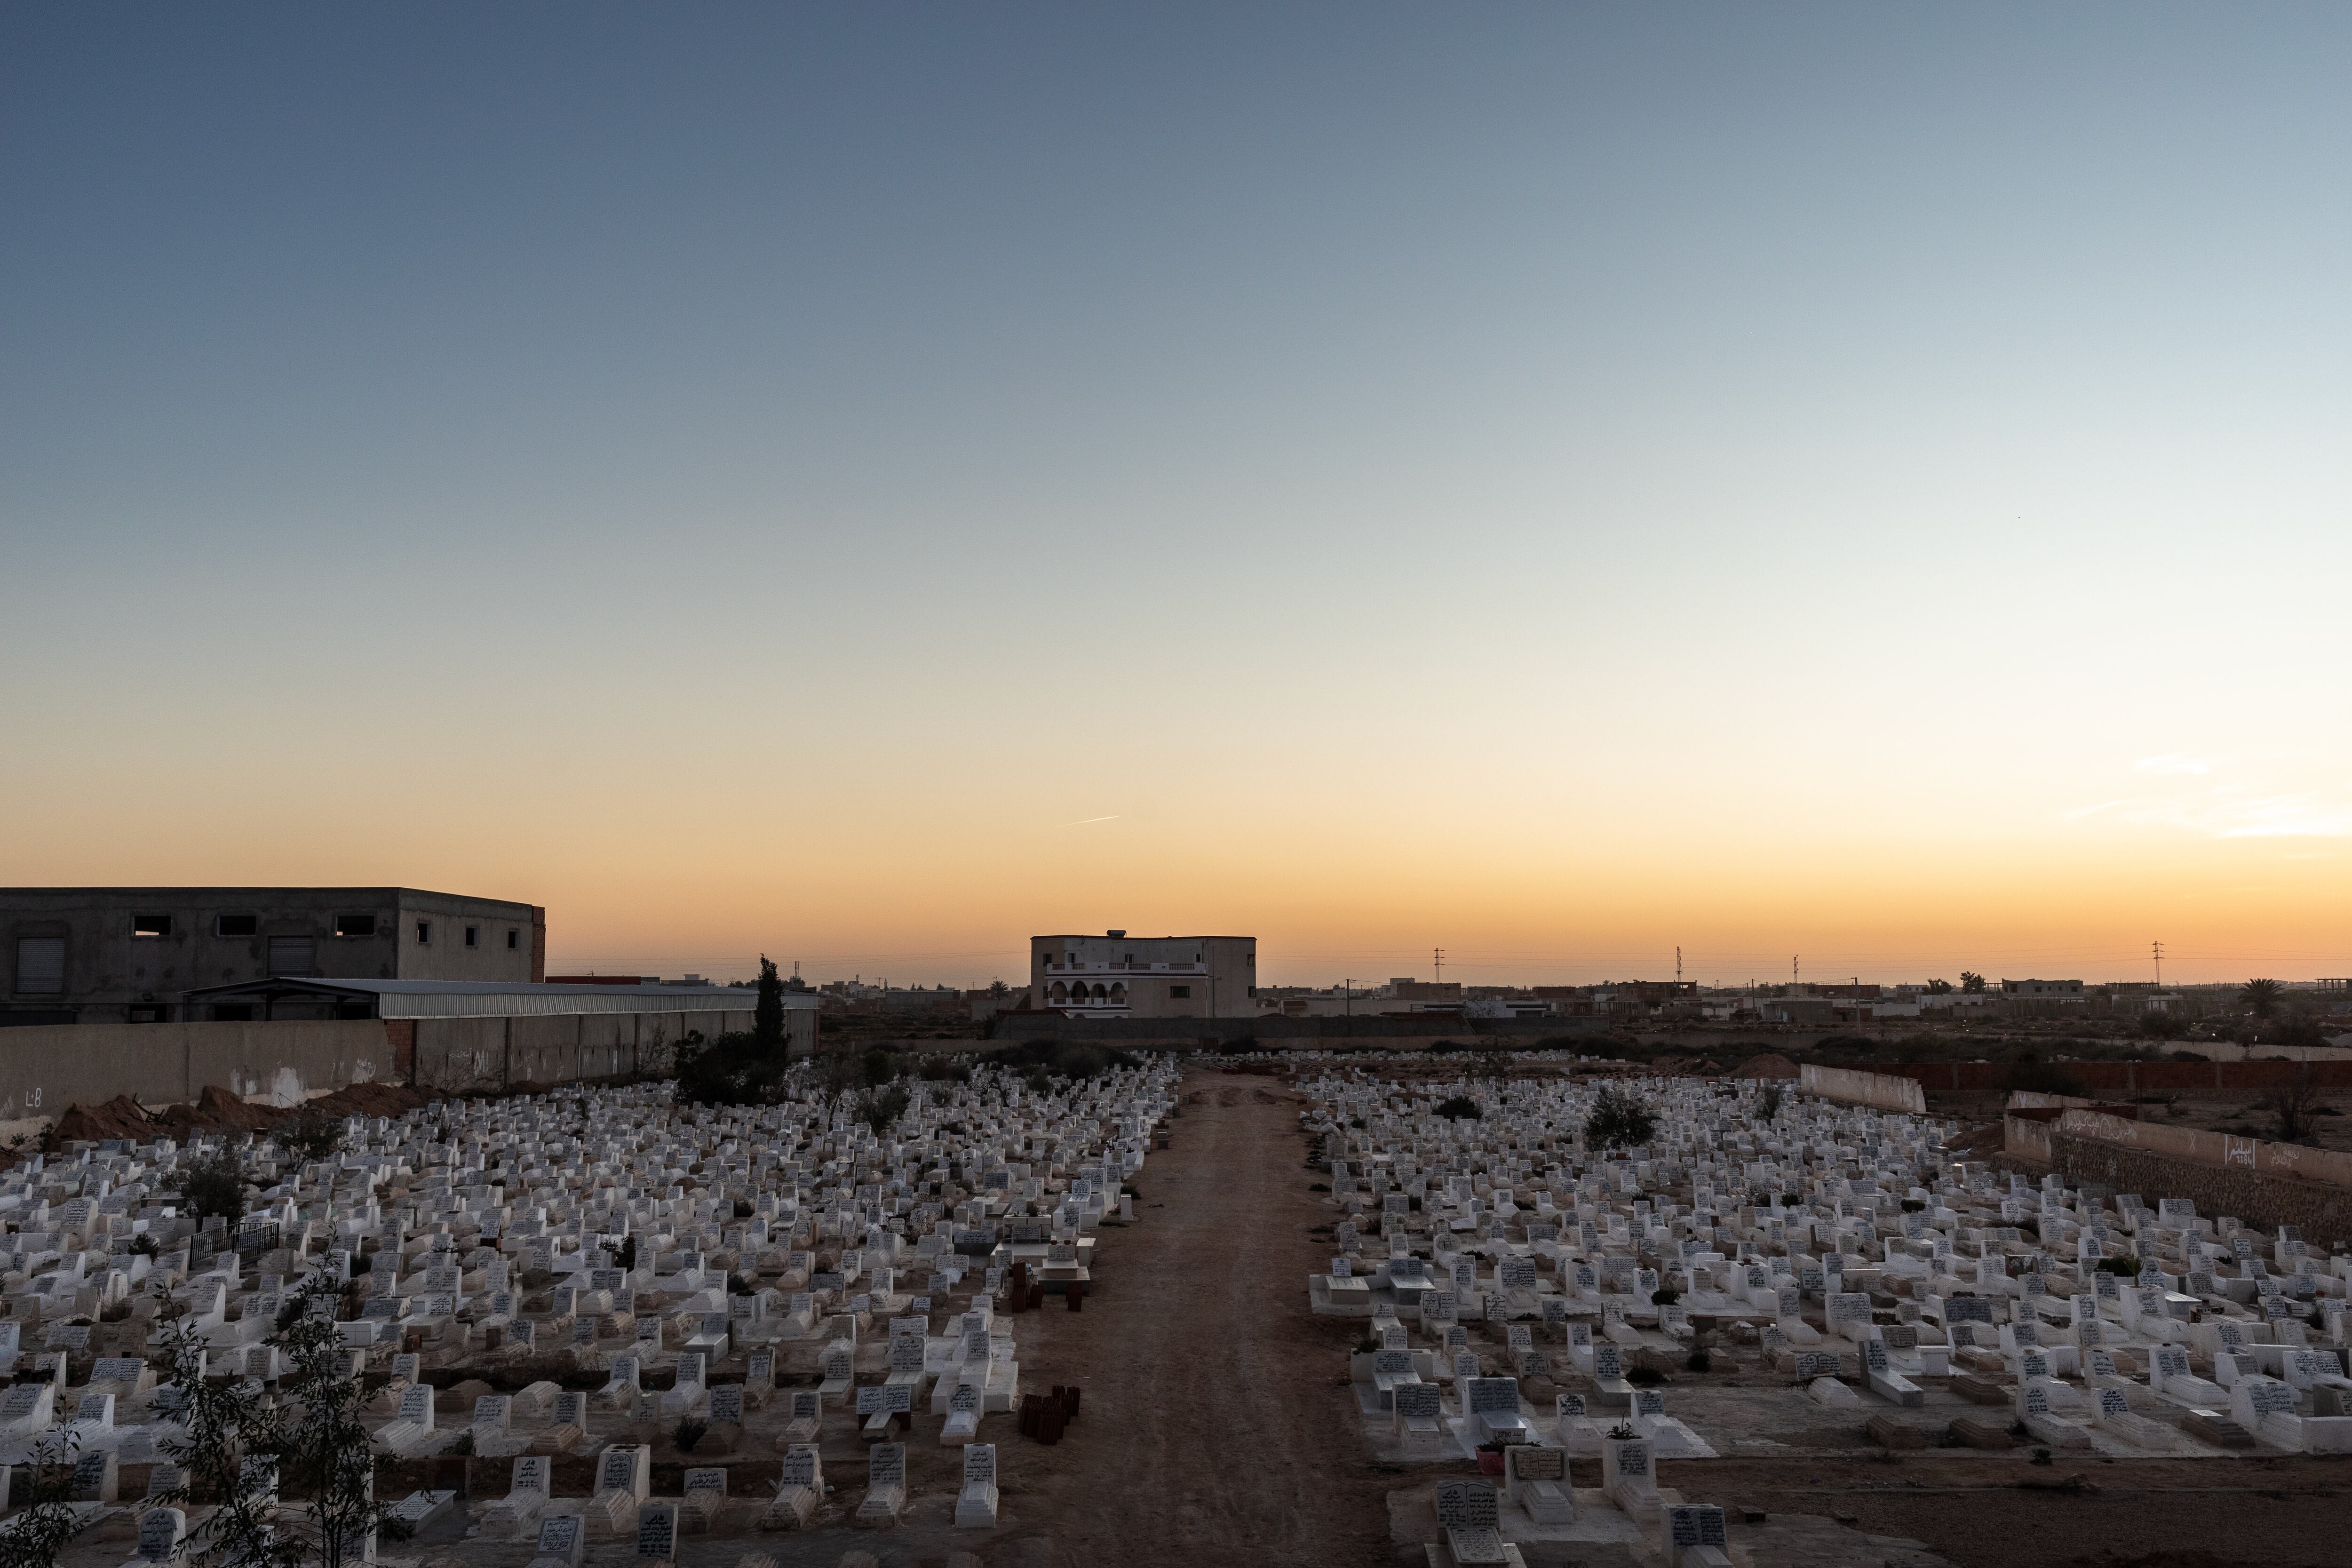 El cementerio de Sfax, Túnez, donde están enterrados los inmigrantes anónimos que murieron durante la travesía a Italia.